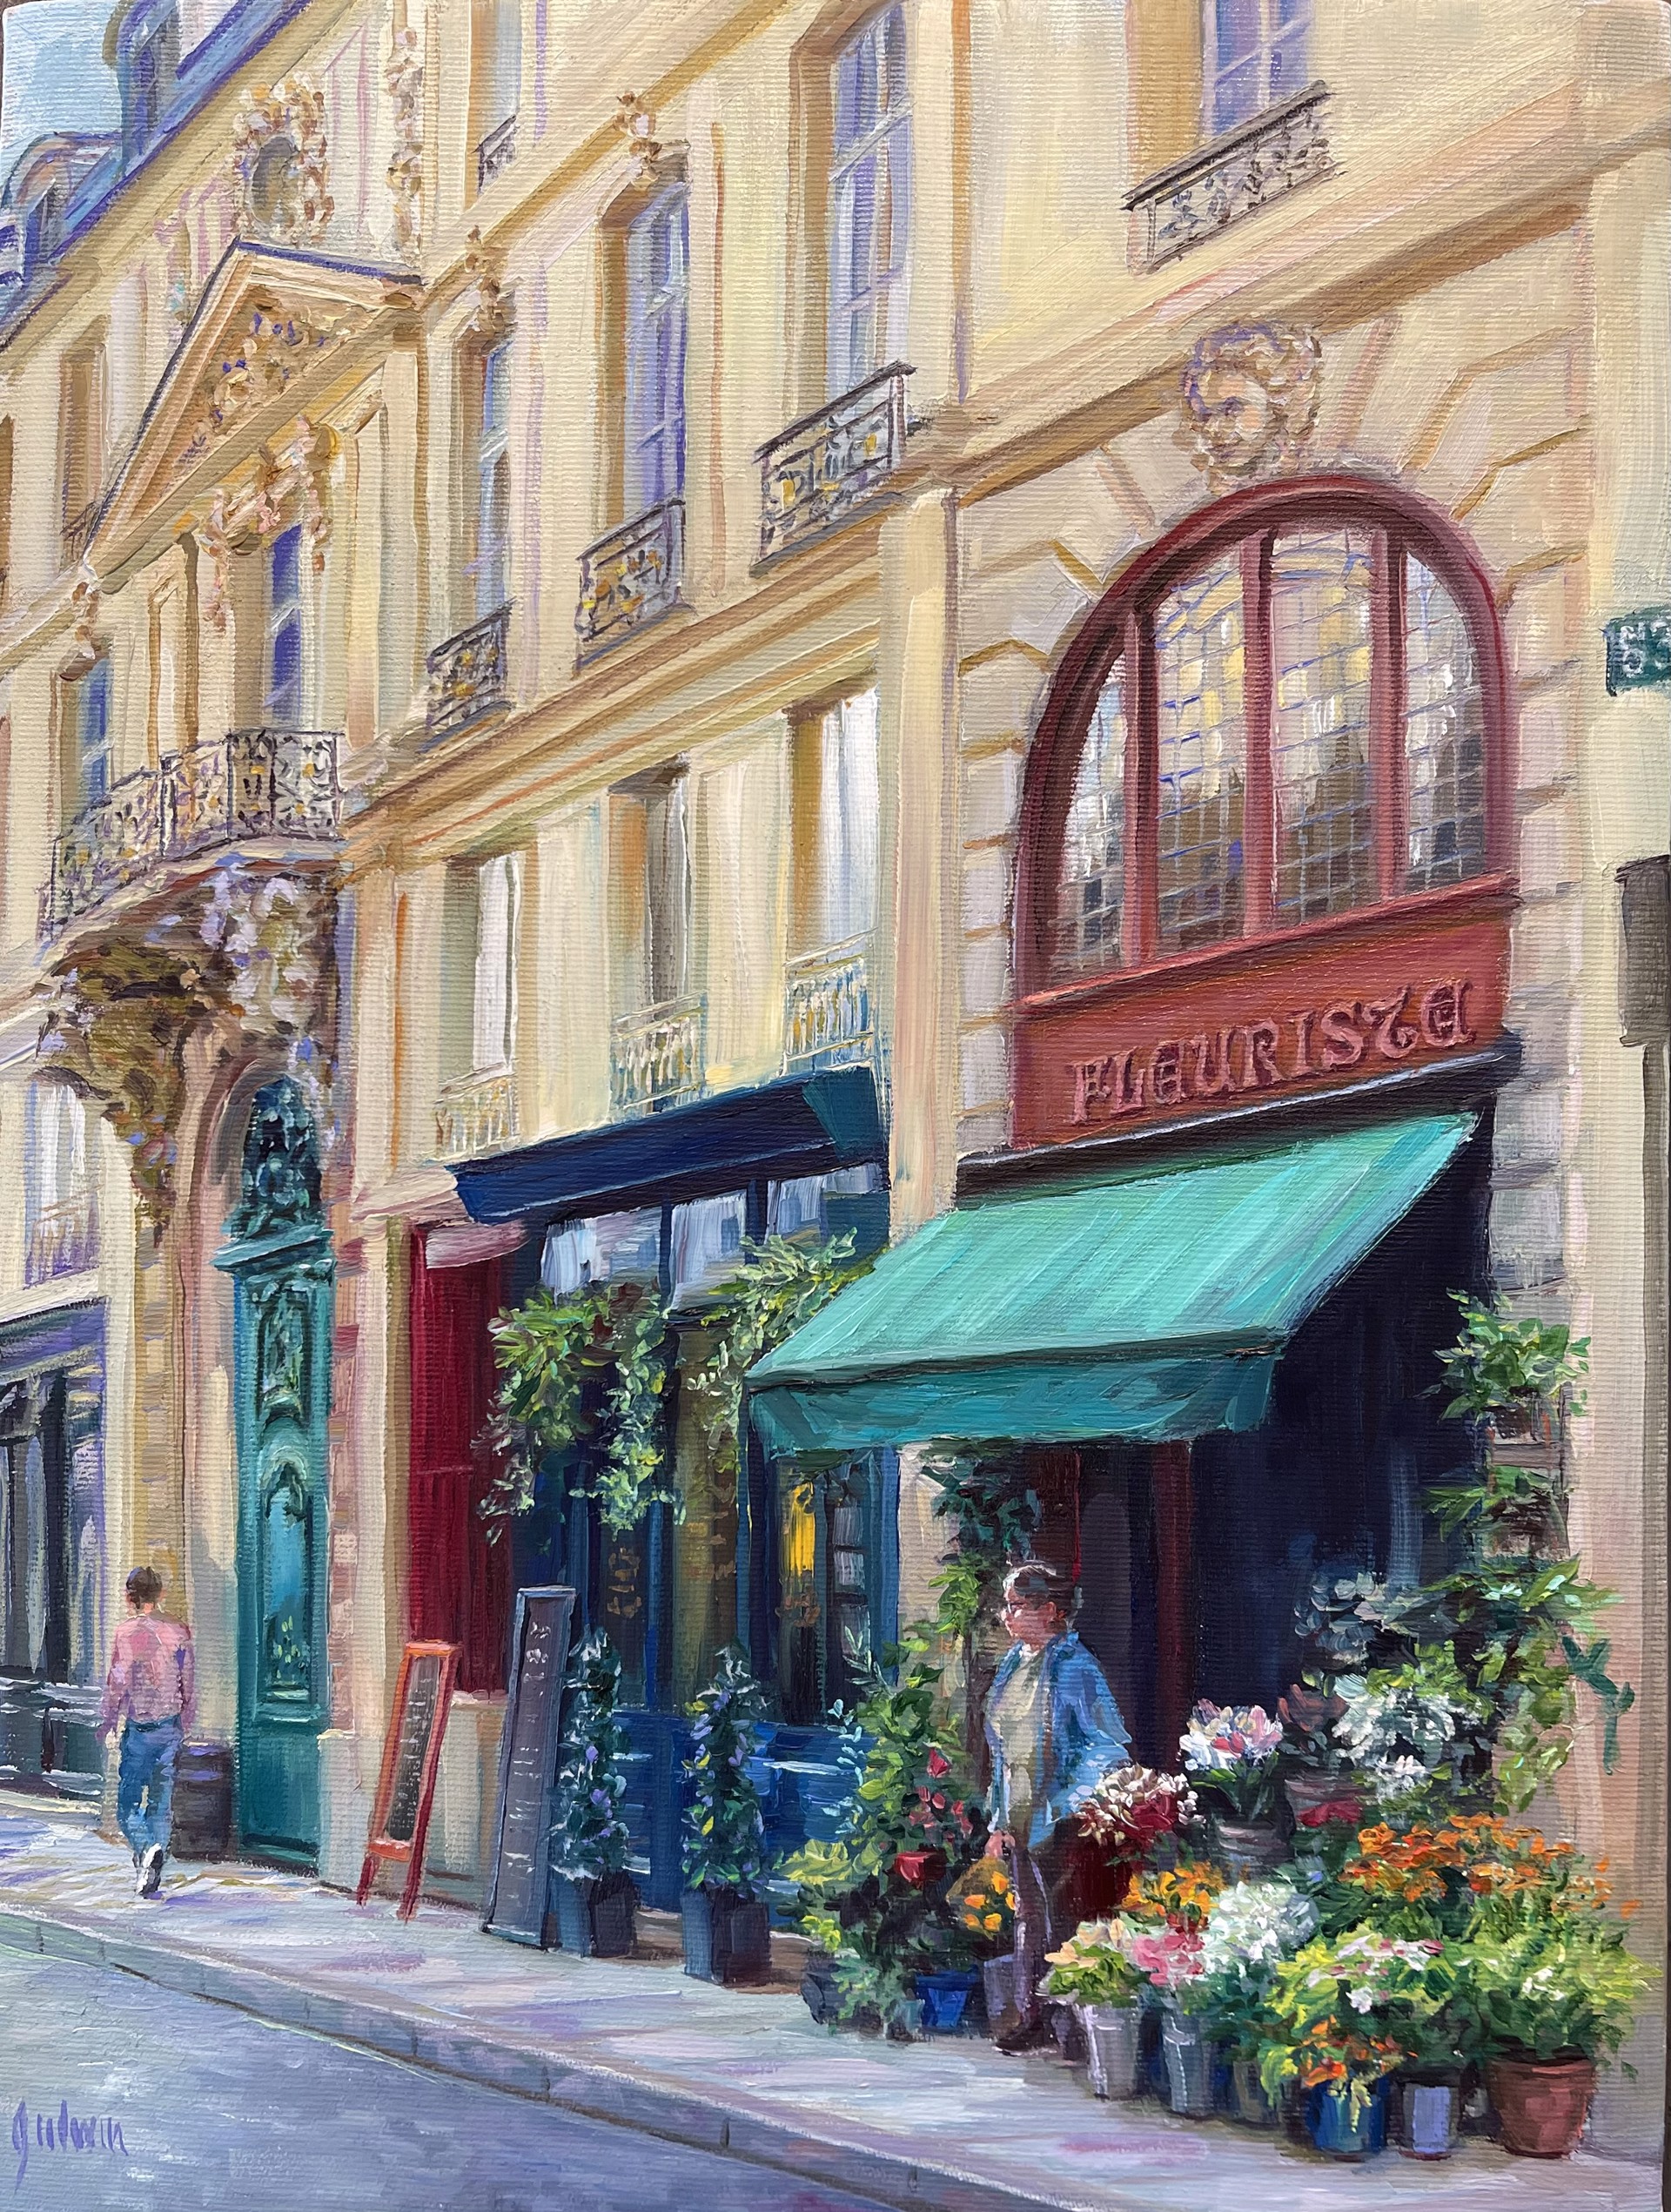 Le Fleuriste, Paris by Lindsay Goodwin